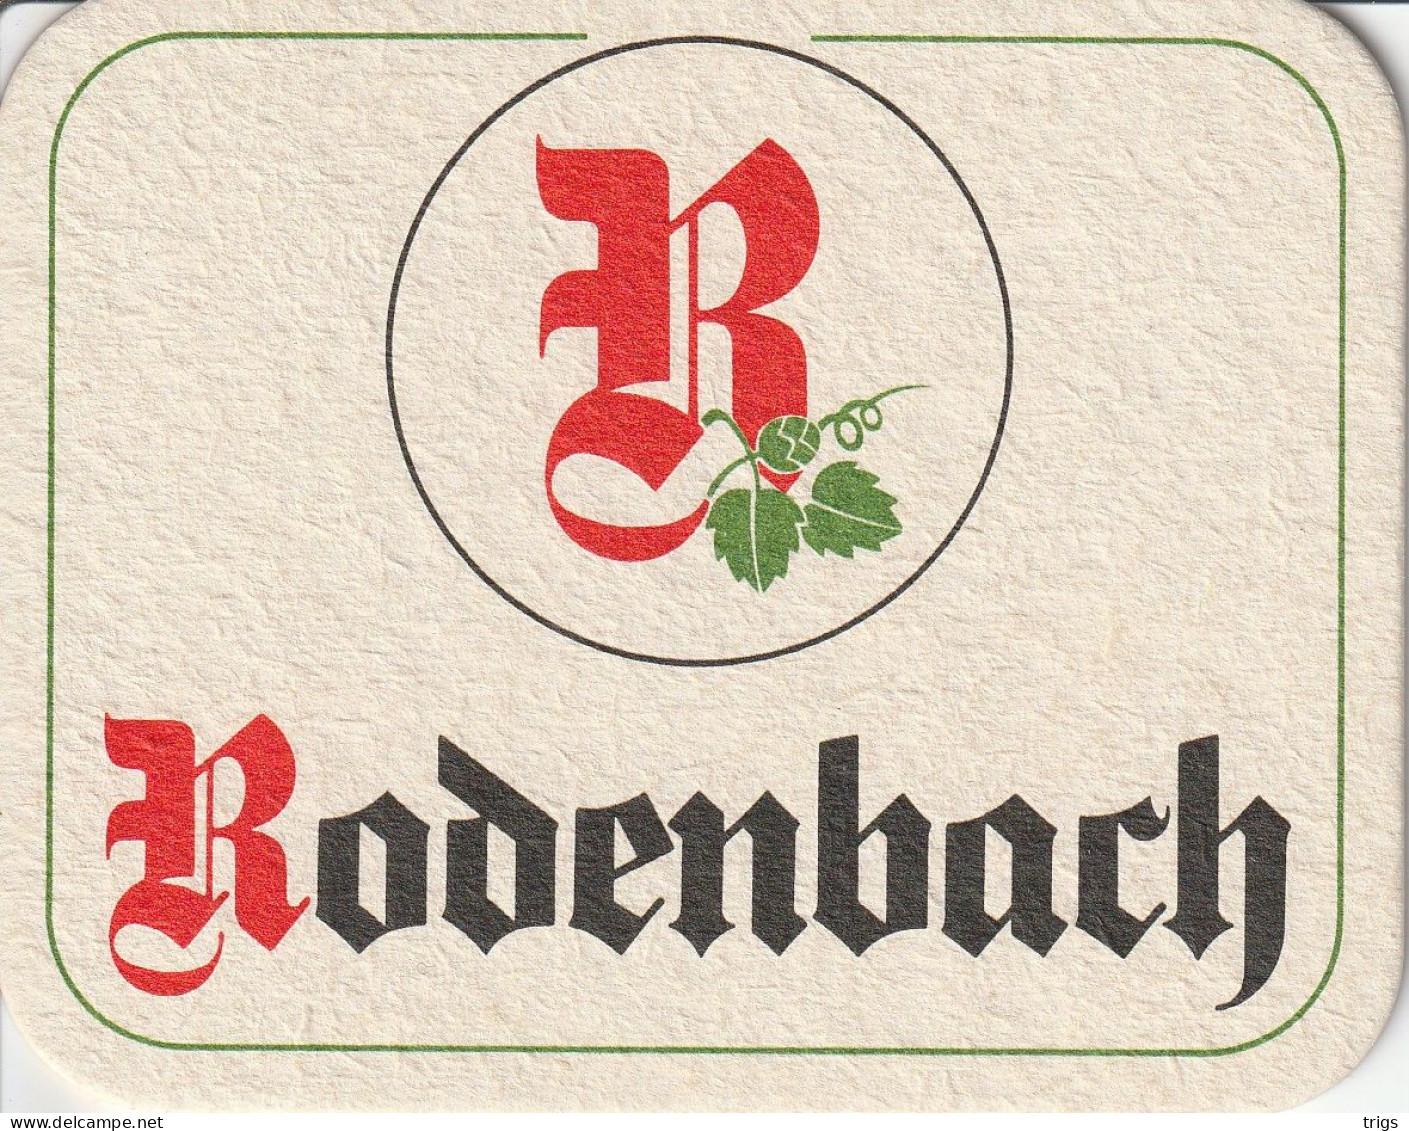 Rodenbach - Bierdeckel